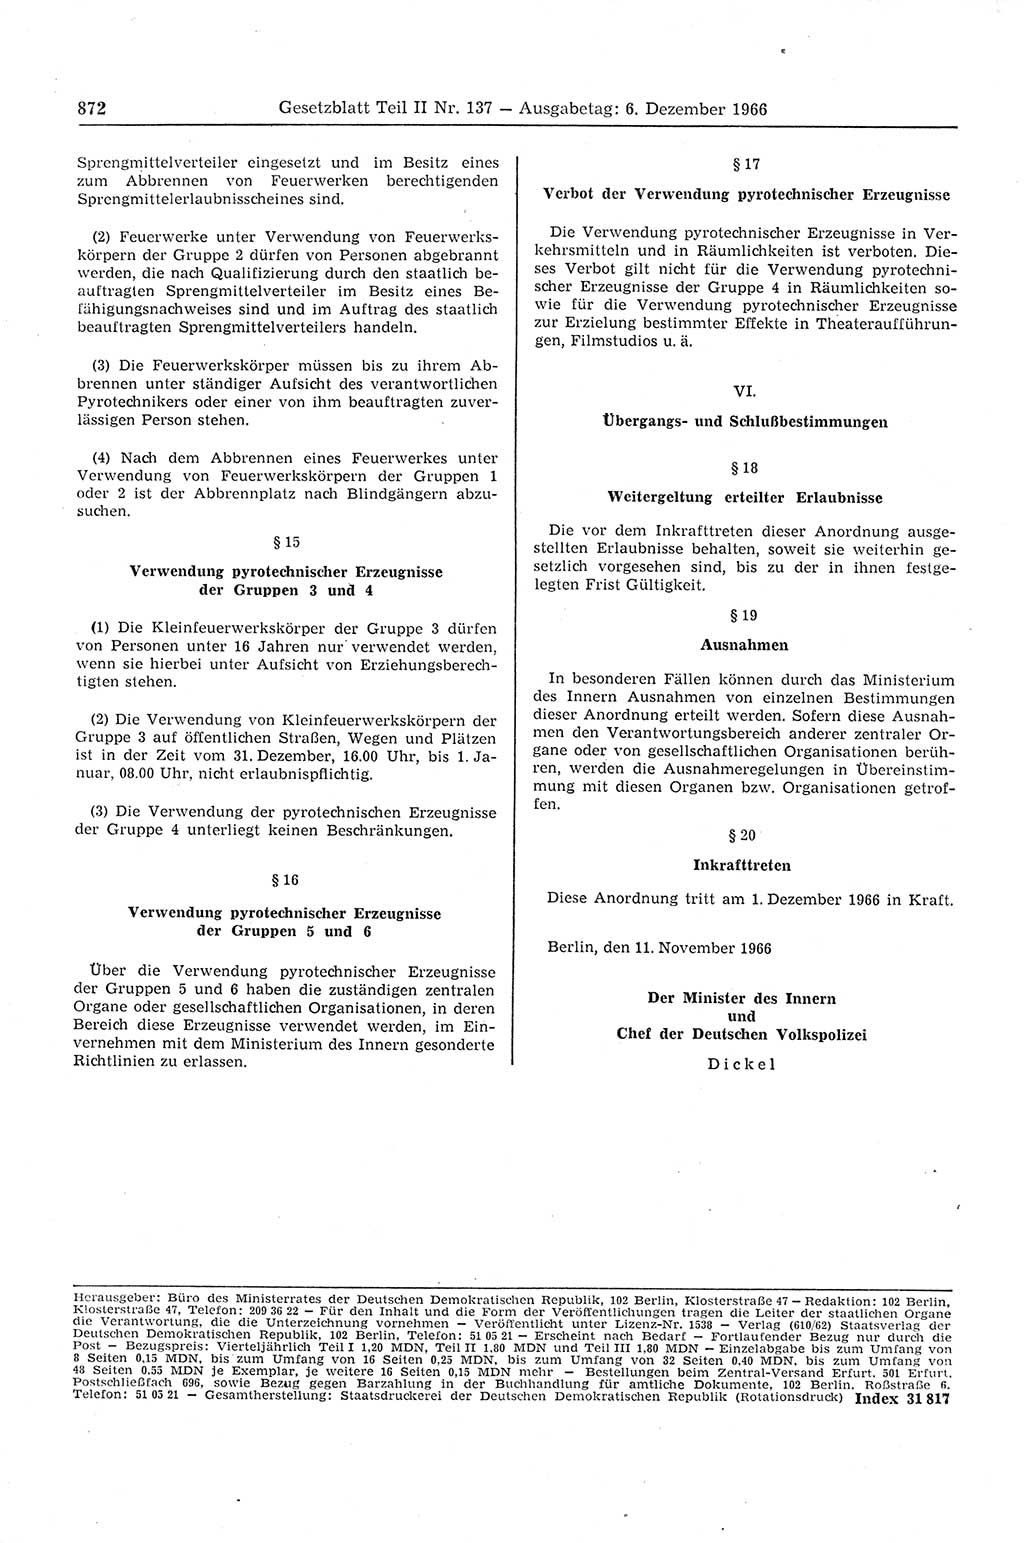 Gesetzblatt (GBl.) der Deutschen Demokratischen Republik (DDR) Teil ⅠⅠ 1966, Seite 872 (GBl. DDR ⅠⅠ 1966, S. 872)